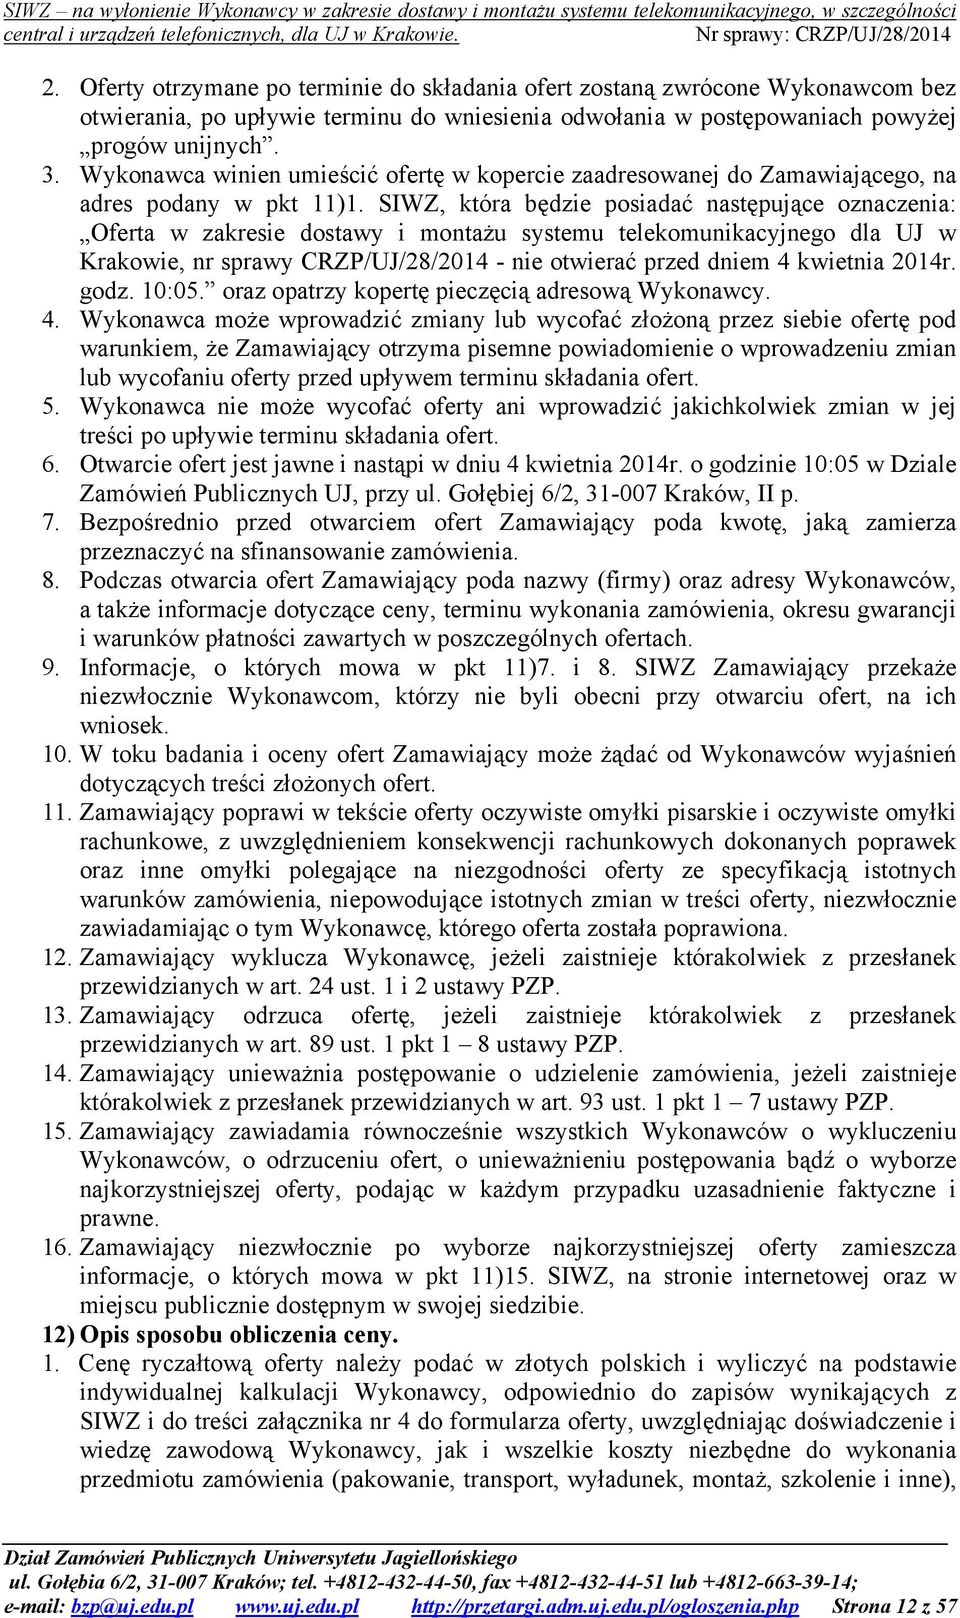 SIWZ, która będzie posiadać następujące oznaczenia: Oferta w zakresie dostawy i montażu systemu telekomunikacyjnego dla UJ w Krakowie, nr sprawy CRZP/UJ/28/2014 - nie otwierać przed dniem 4 kwietnia